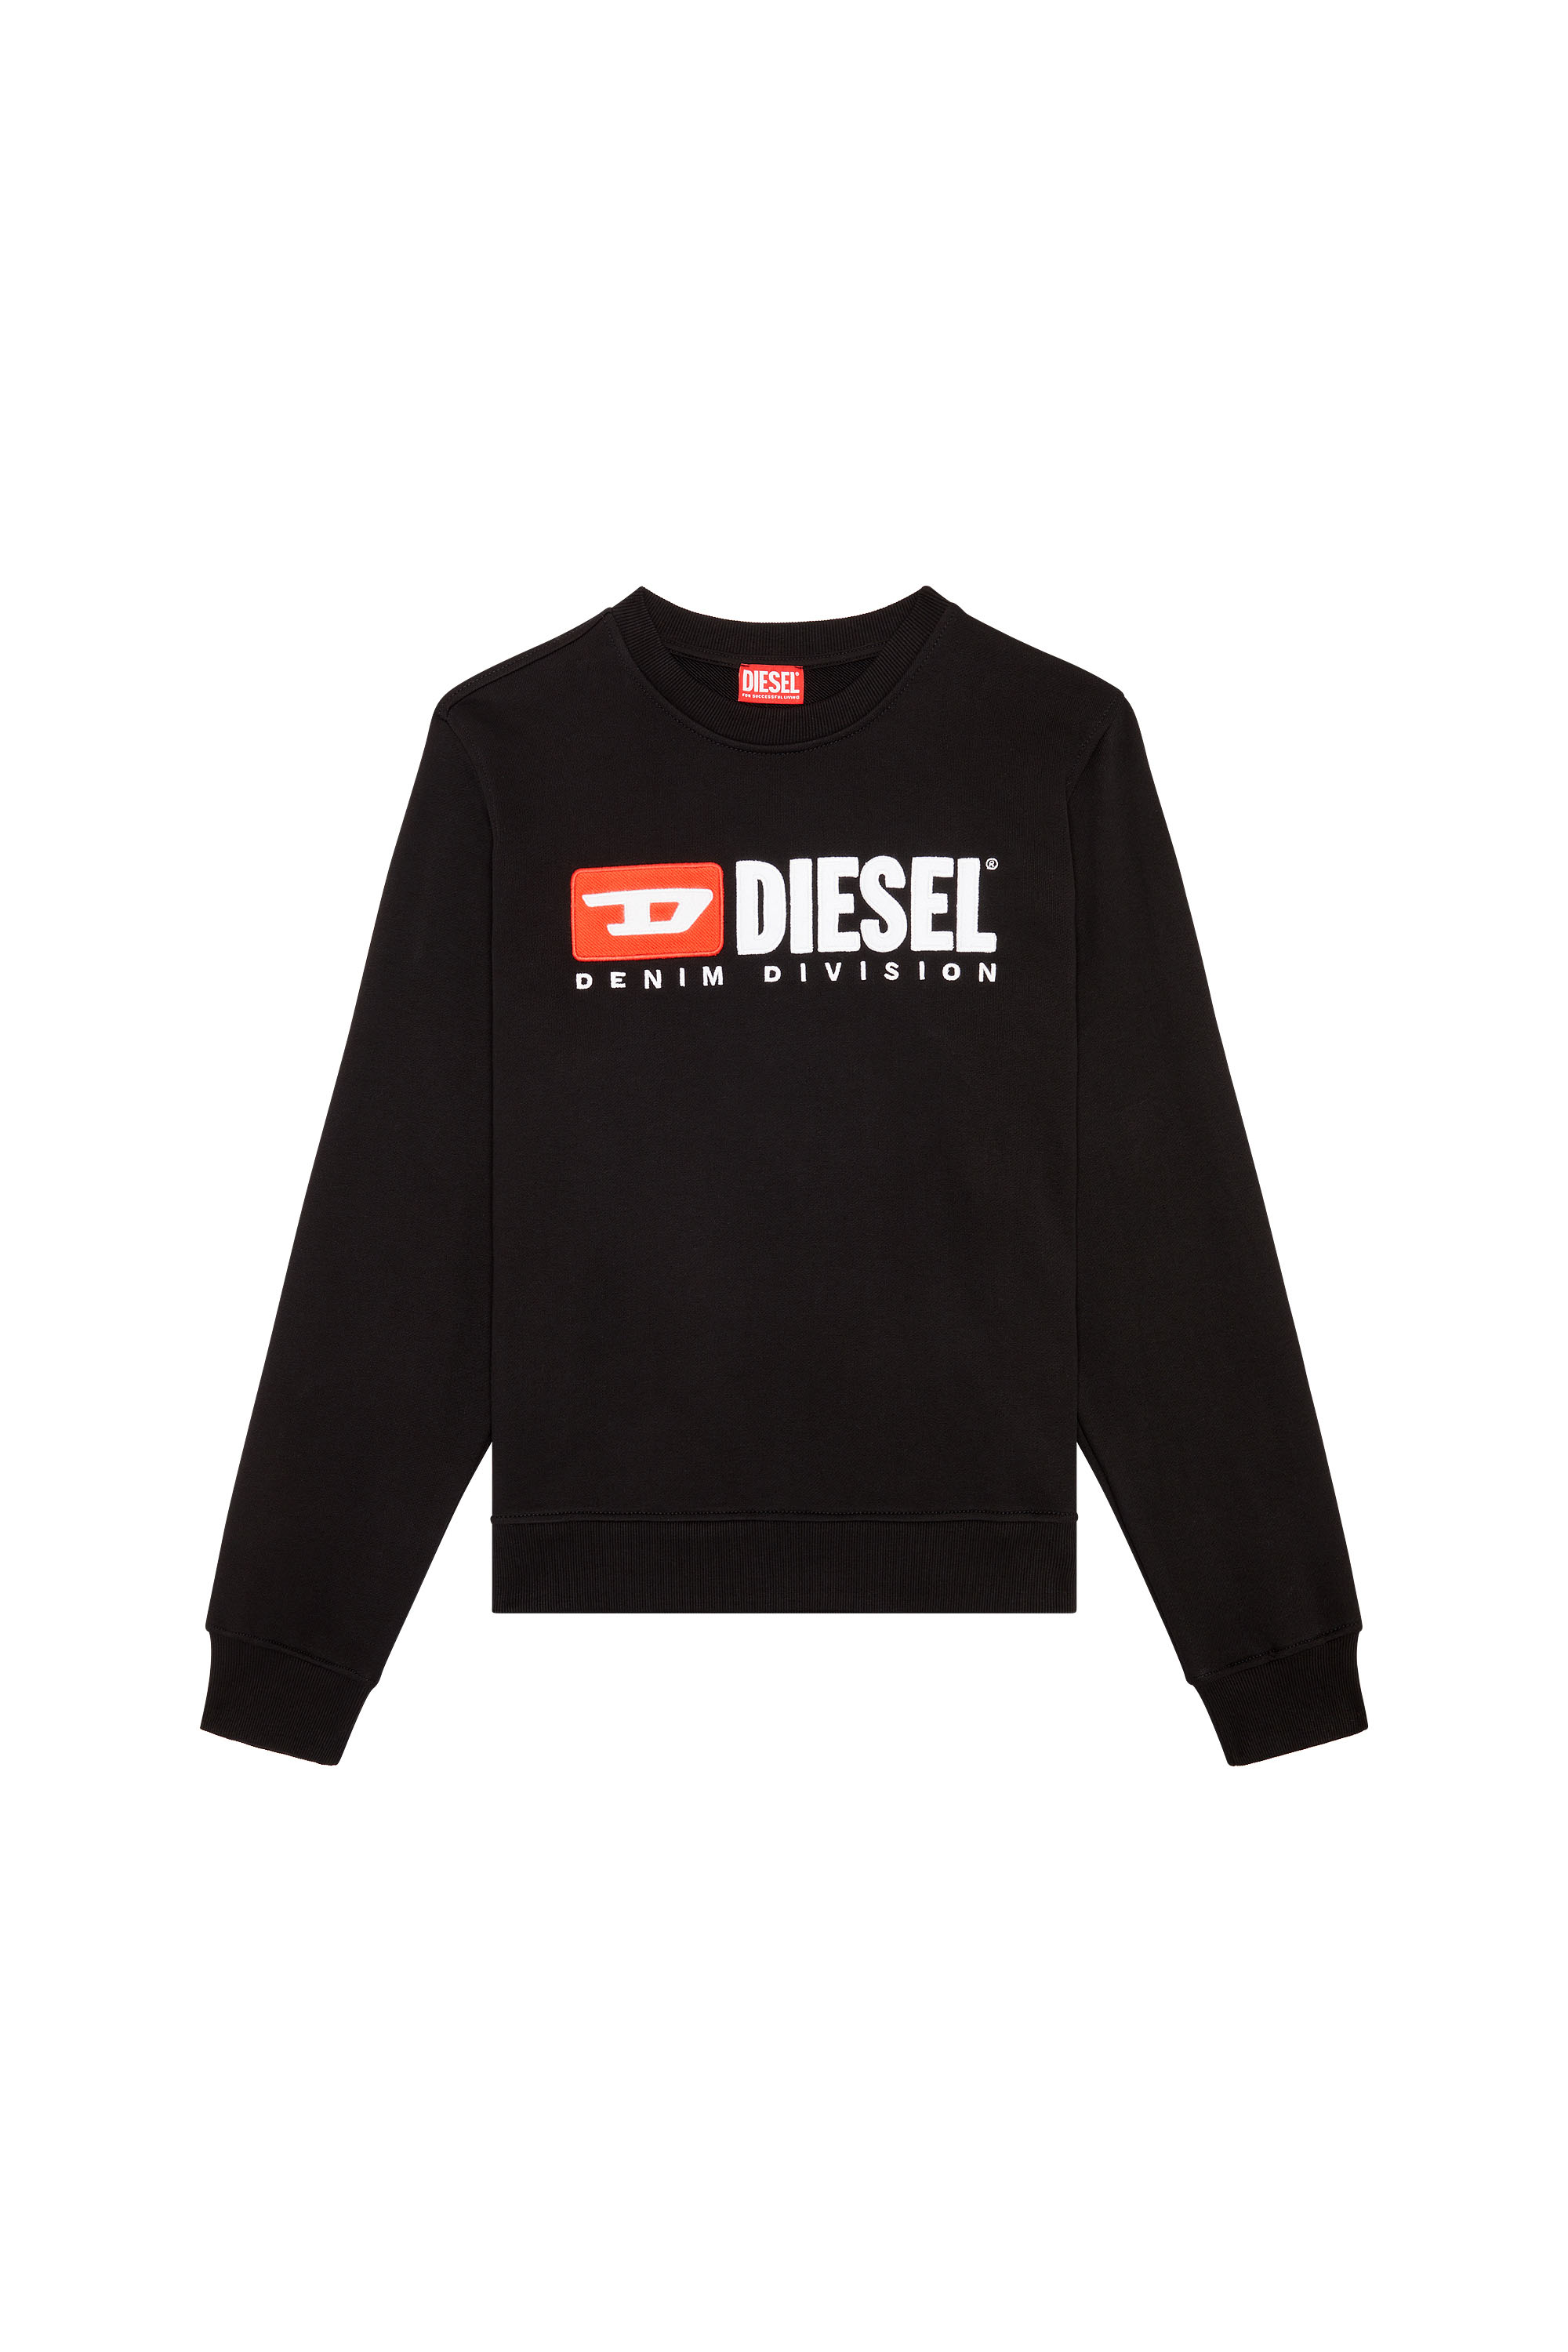 Diesel - S-GINN-DIV, Schwarz - Image 6